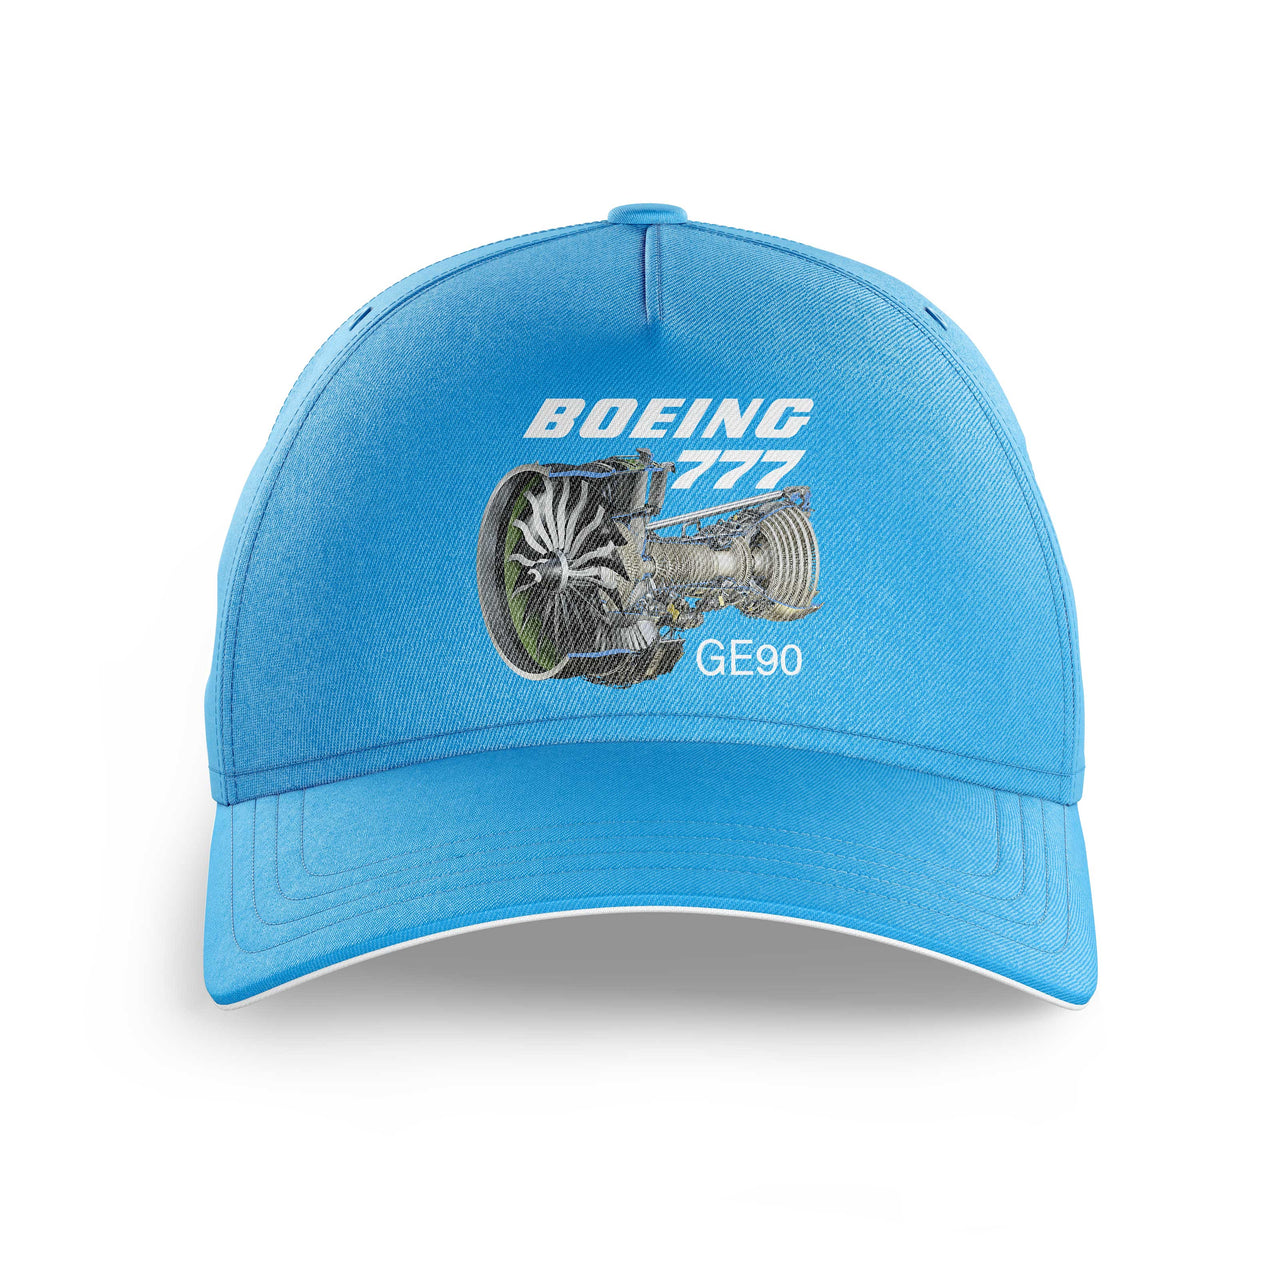 Boeing 777 & GE90 Engine Printed Hats